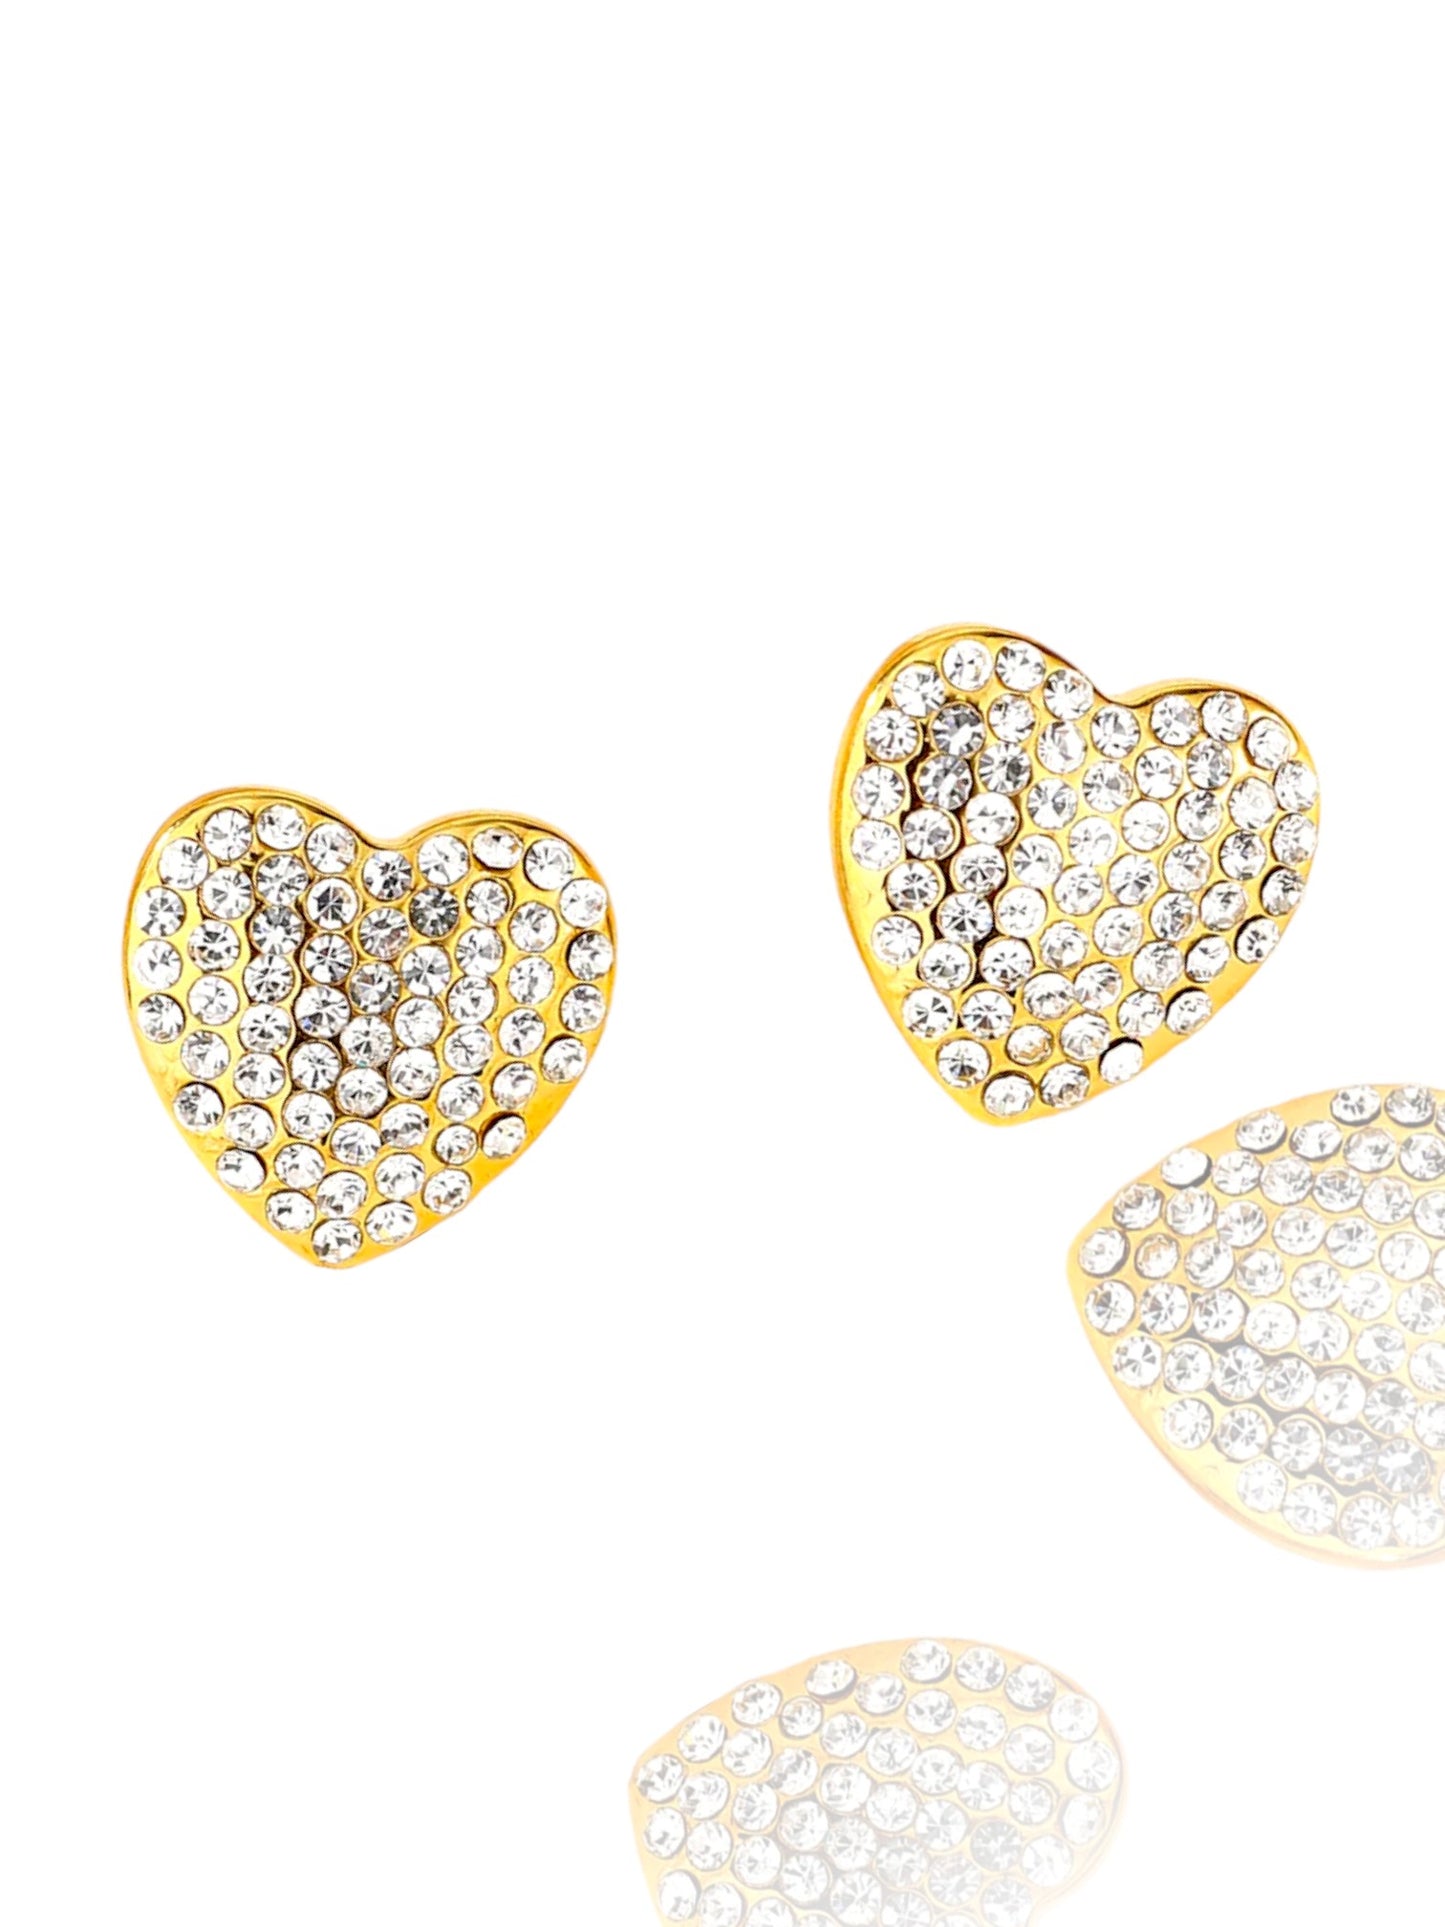 Cute Shiny Heart Shape Stainless Steel Zircon  Ear Studs